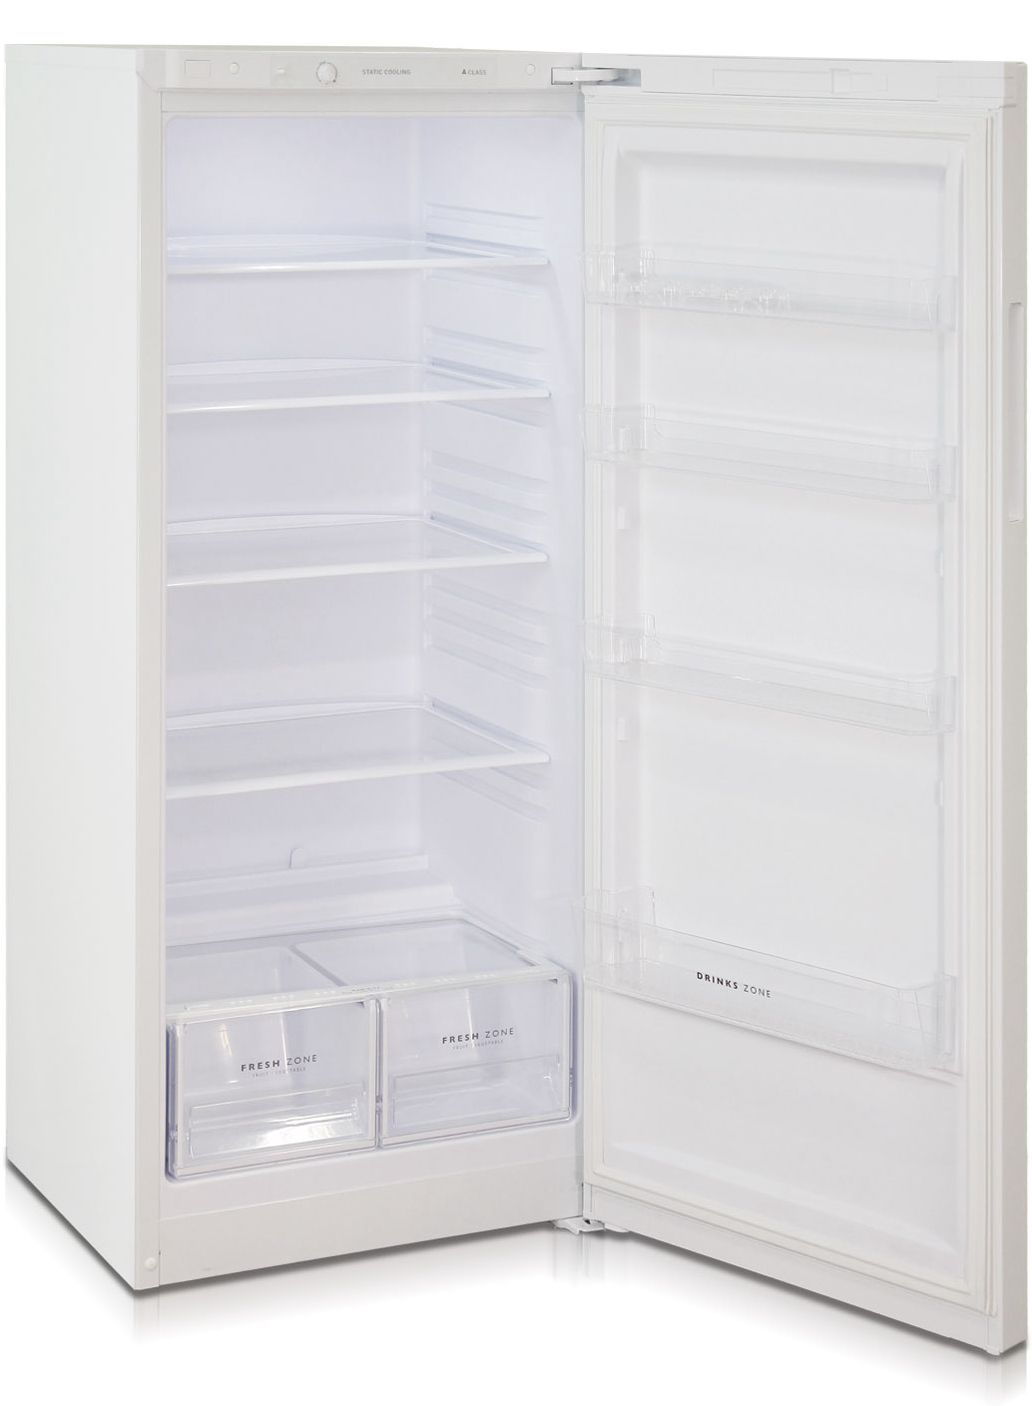 холодильник бирюса 6042, купить в Красноярске холодильник бирюса 6042,  купить в Красноярске дешево холодильник бирюса 6042, купить в Красноярске минимальной цене холодильник бирюса 6042